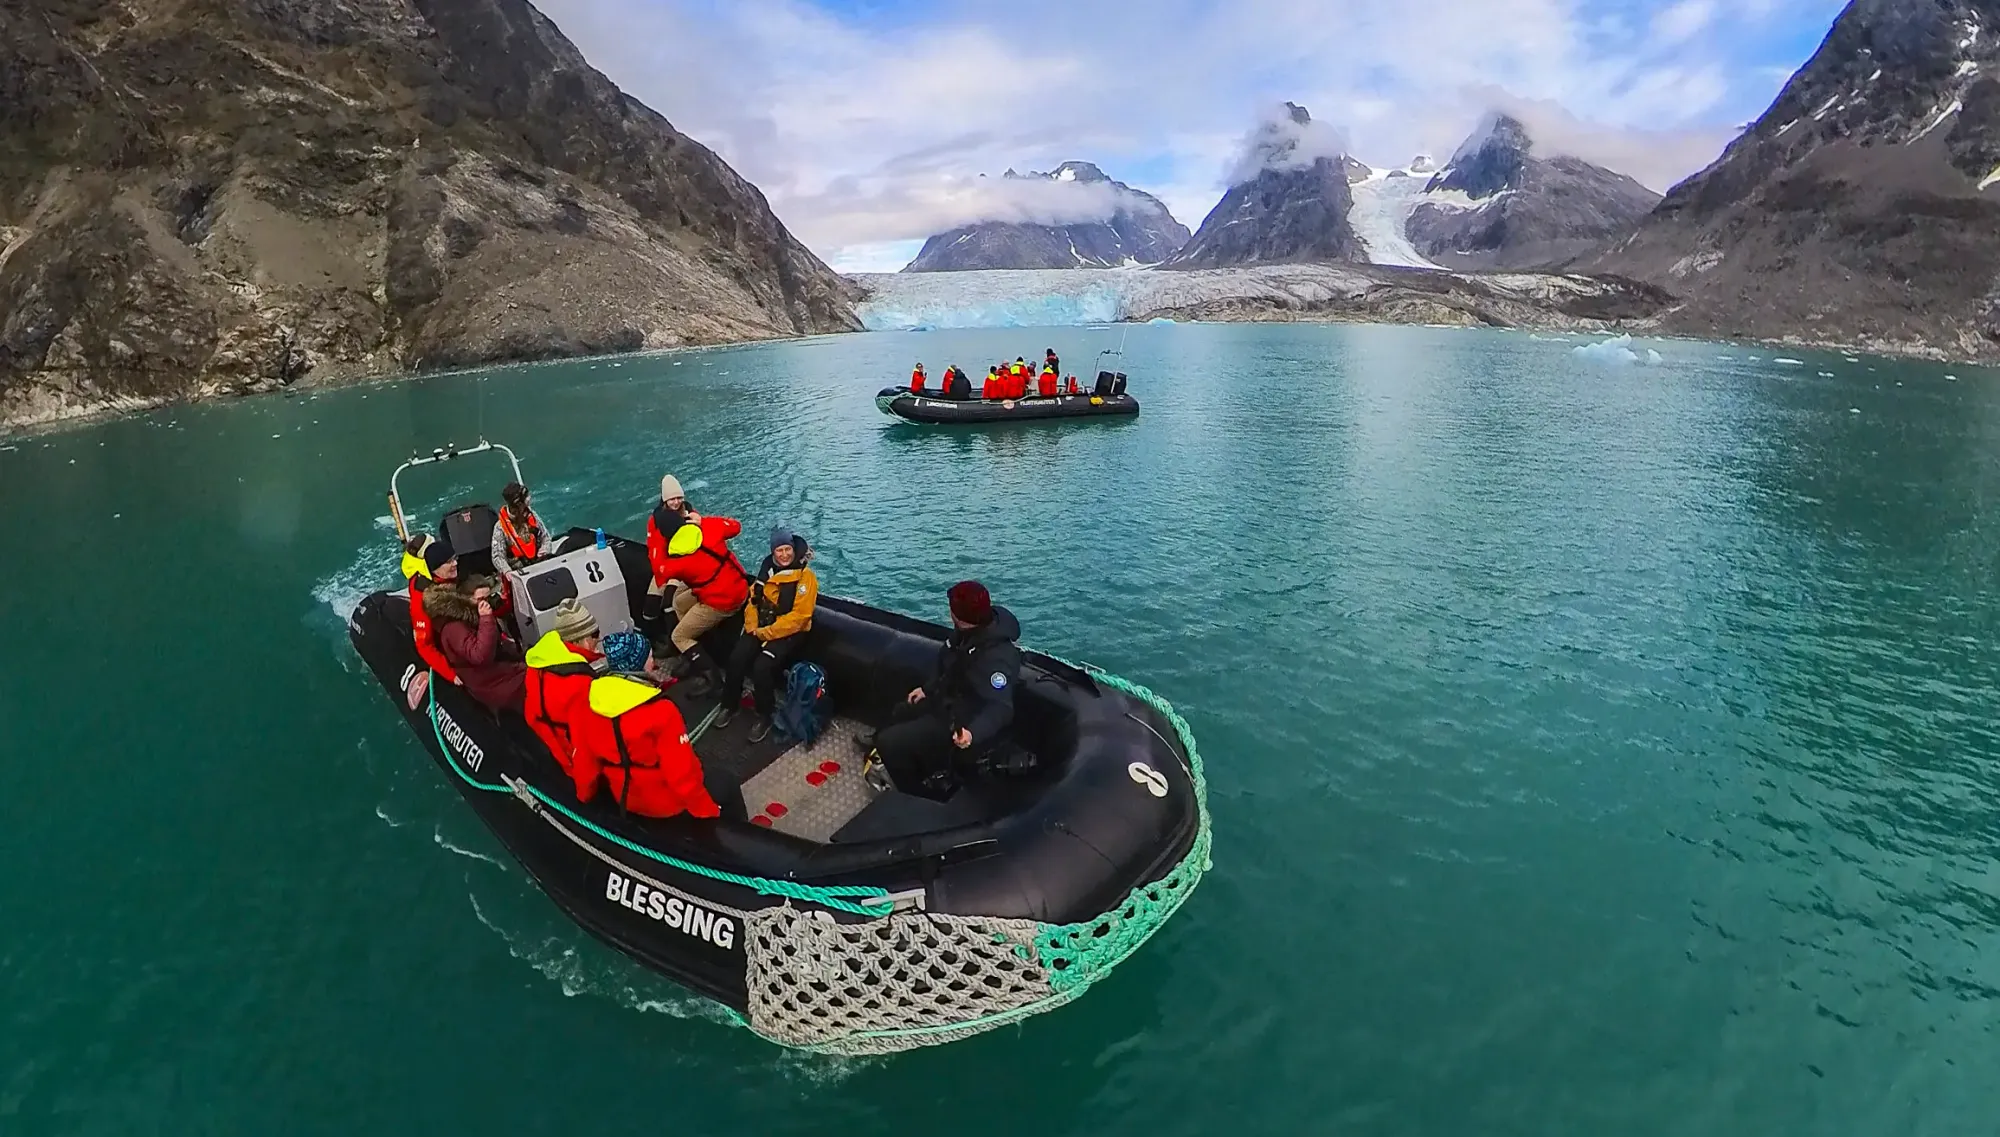 A Hurtigruten Expedition excursion